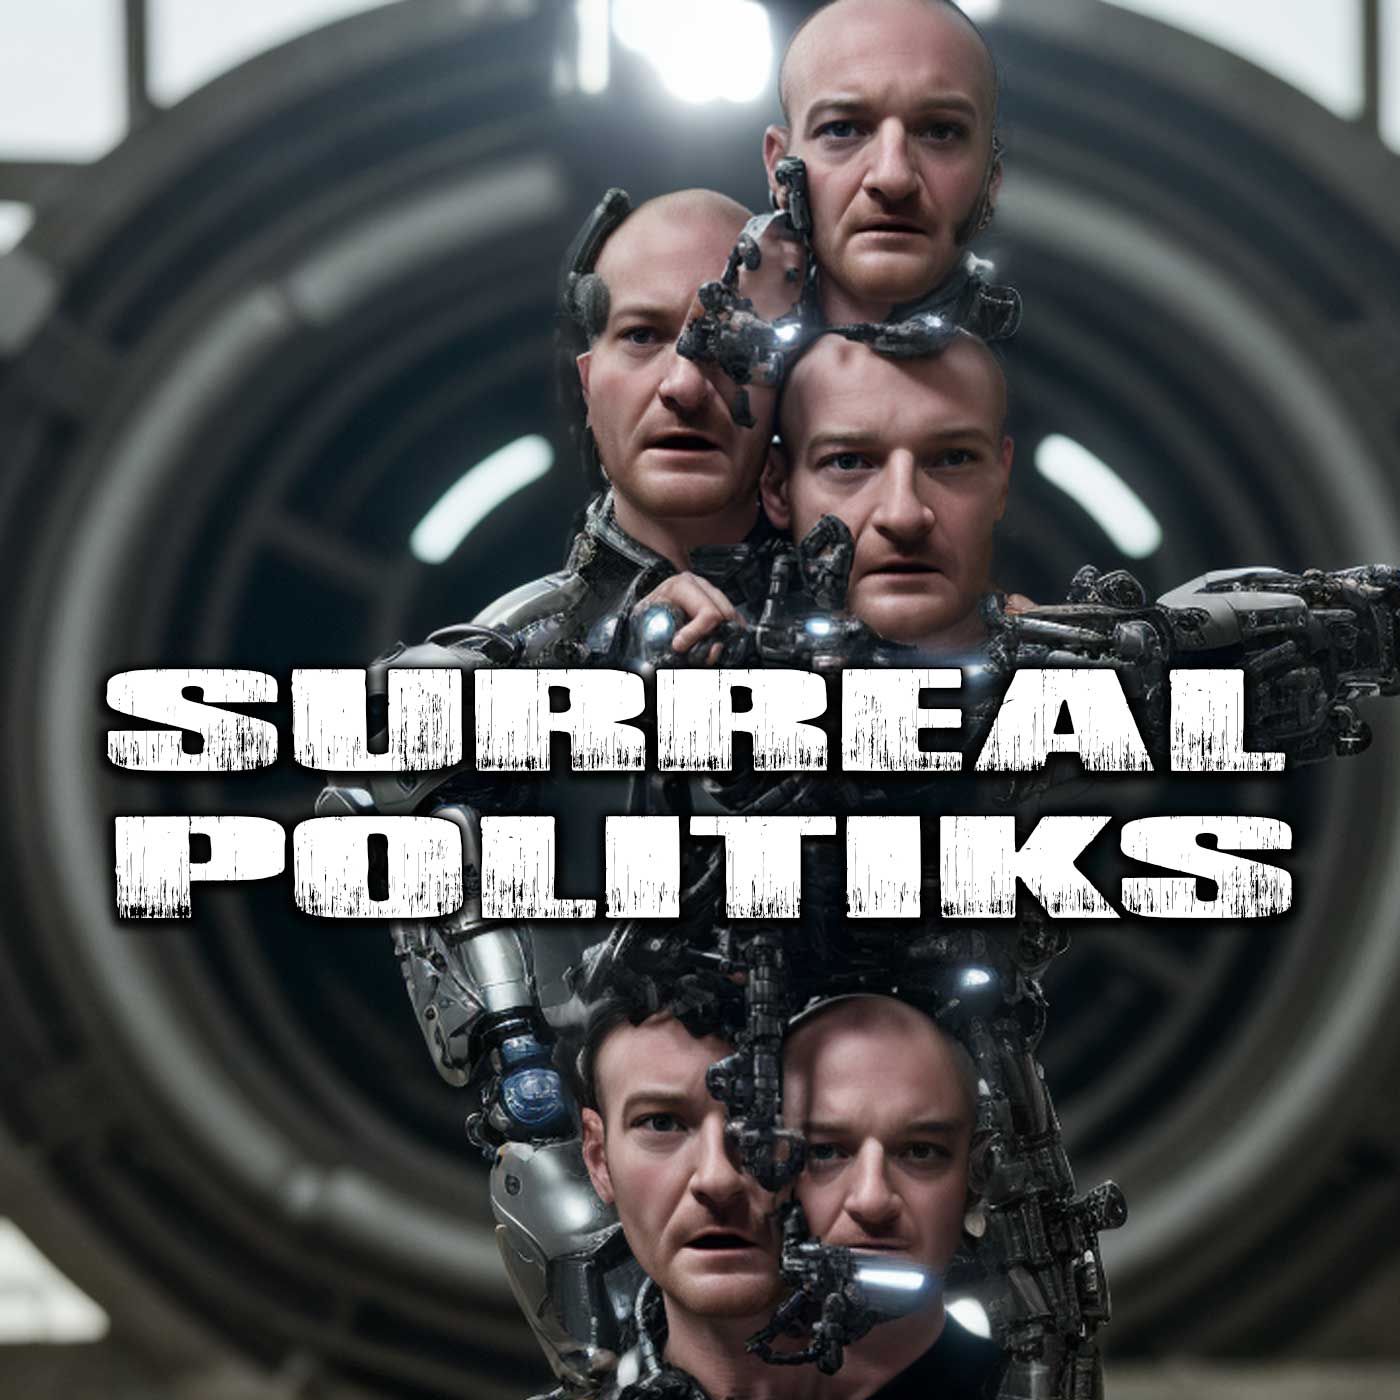 SurrealPolitiks S01E051 – AI Generated